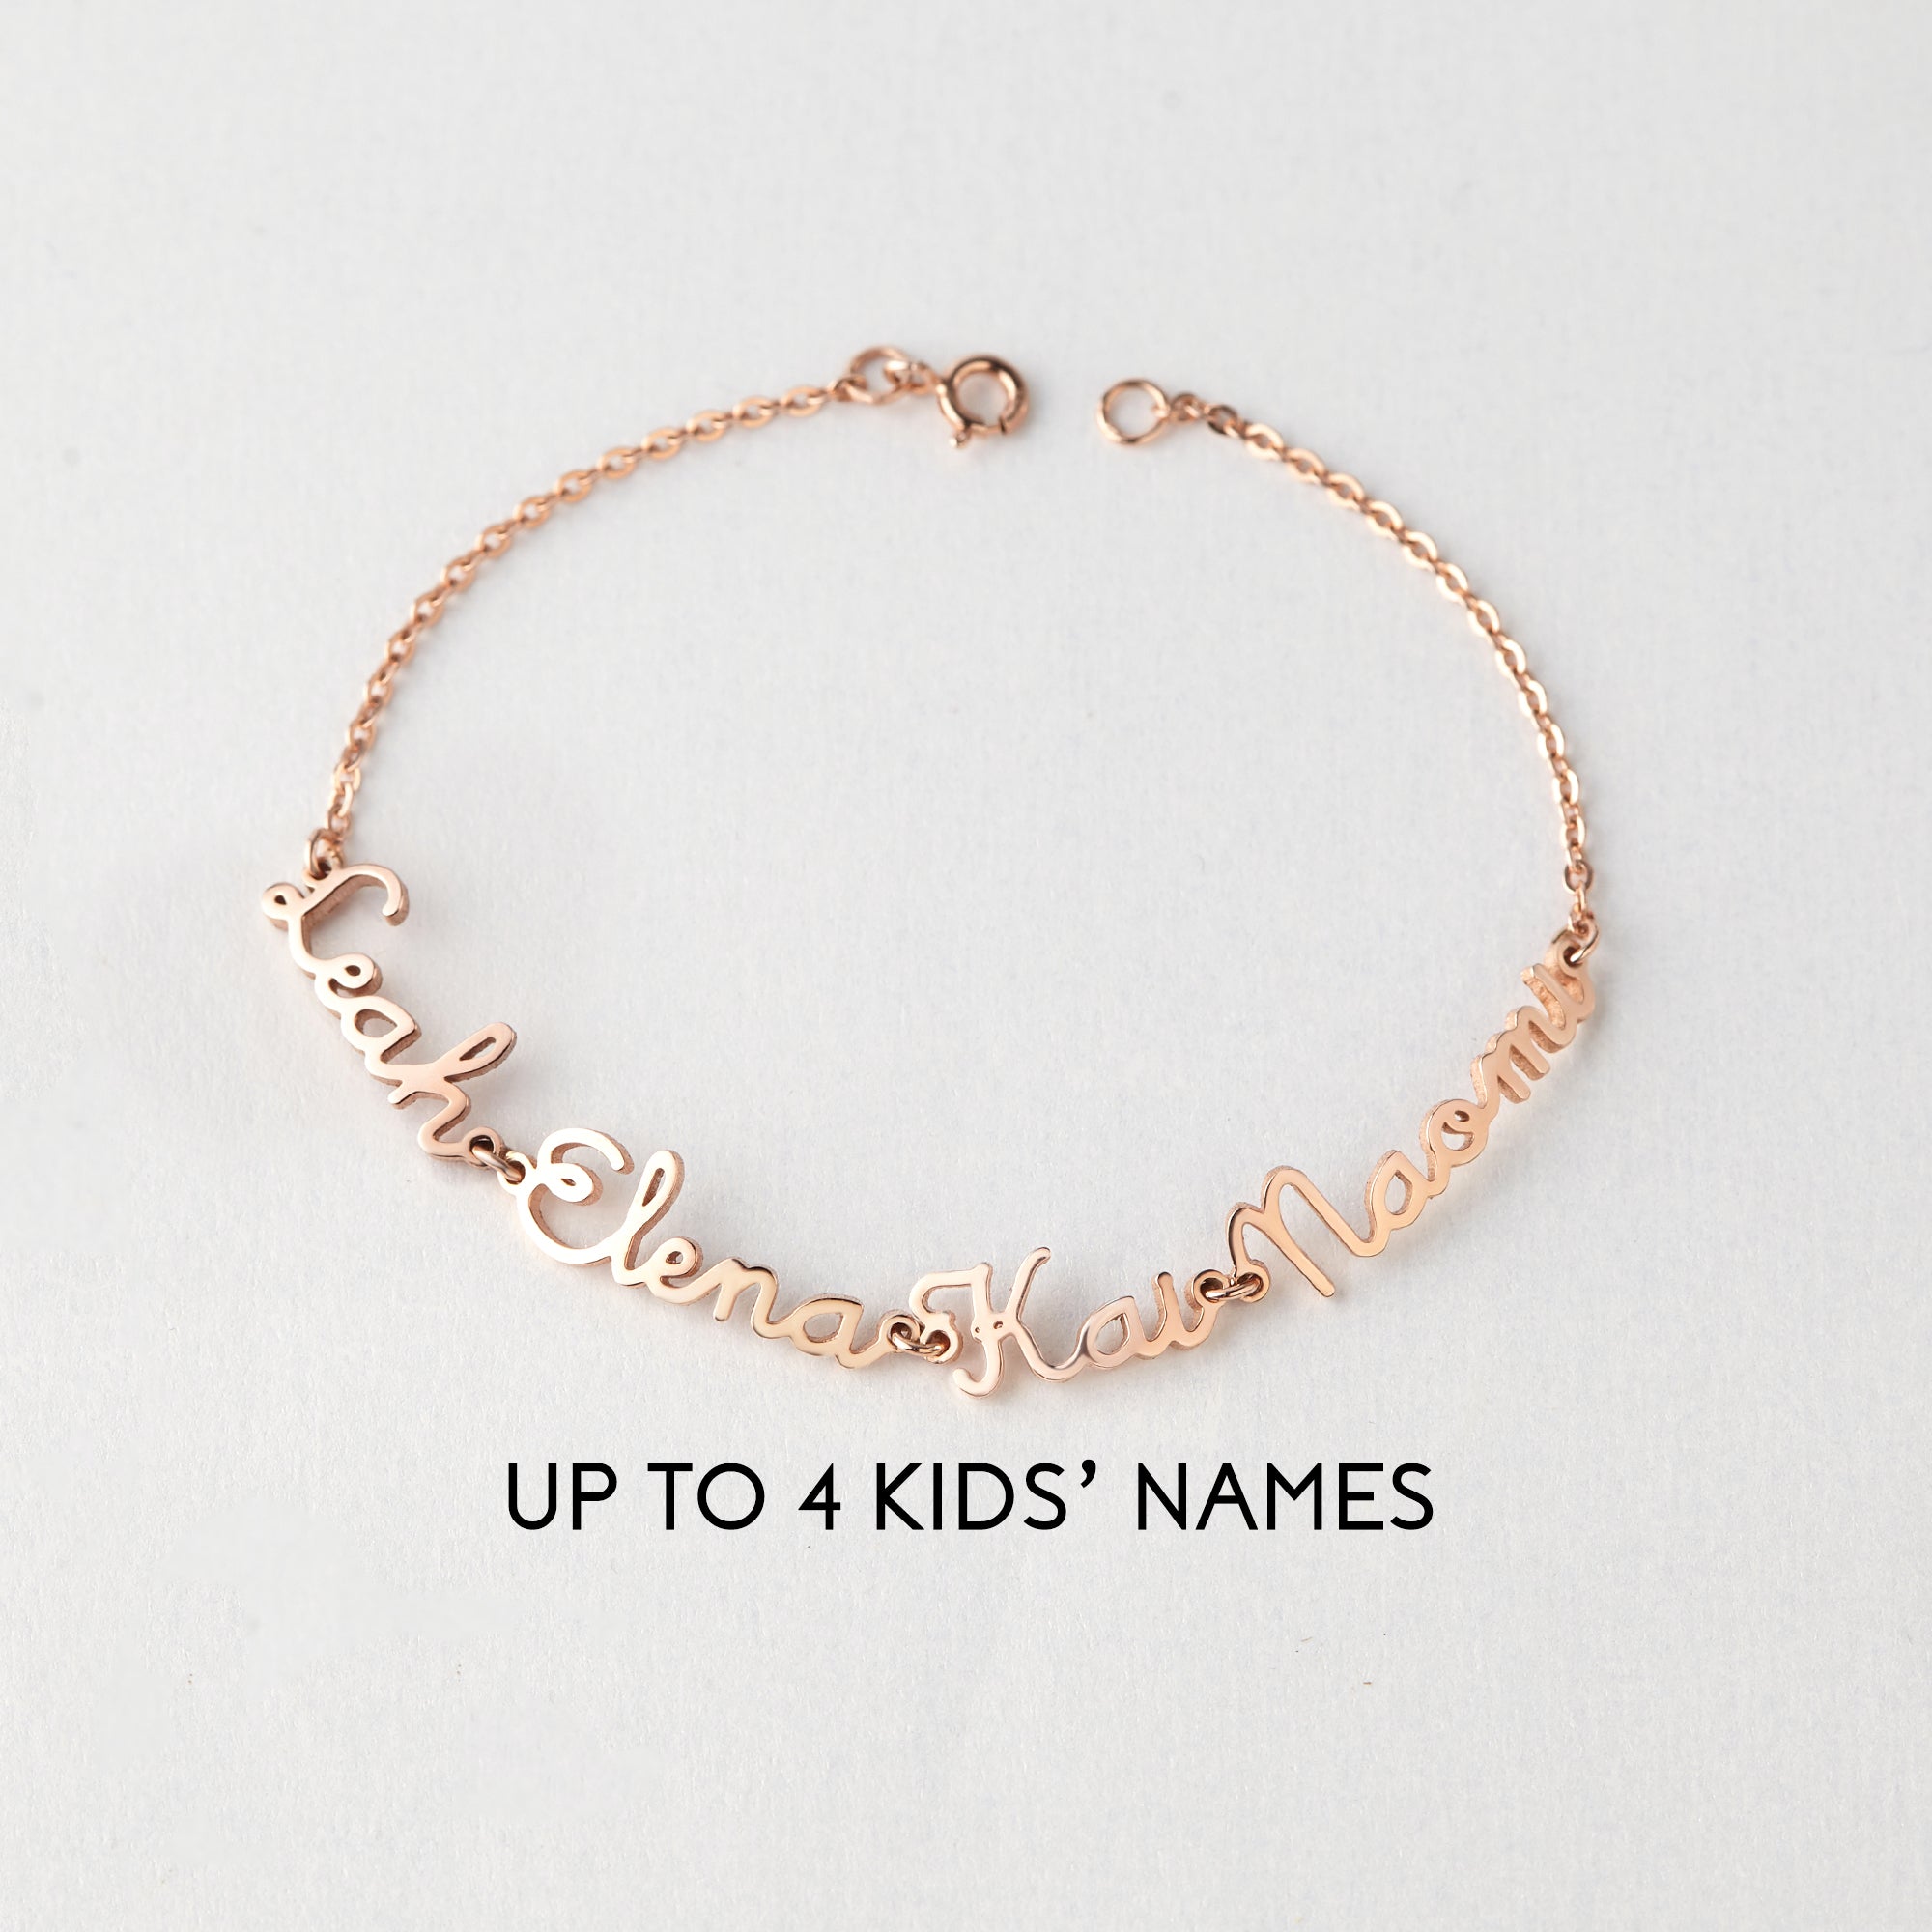 Personalized Kids Names & Birthstones Bracelet - 925 Sterling Silver with 18K Gold/Rose Gold Plating - Bracelets - Bijou Her -  -  - 